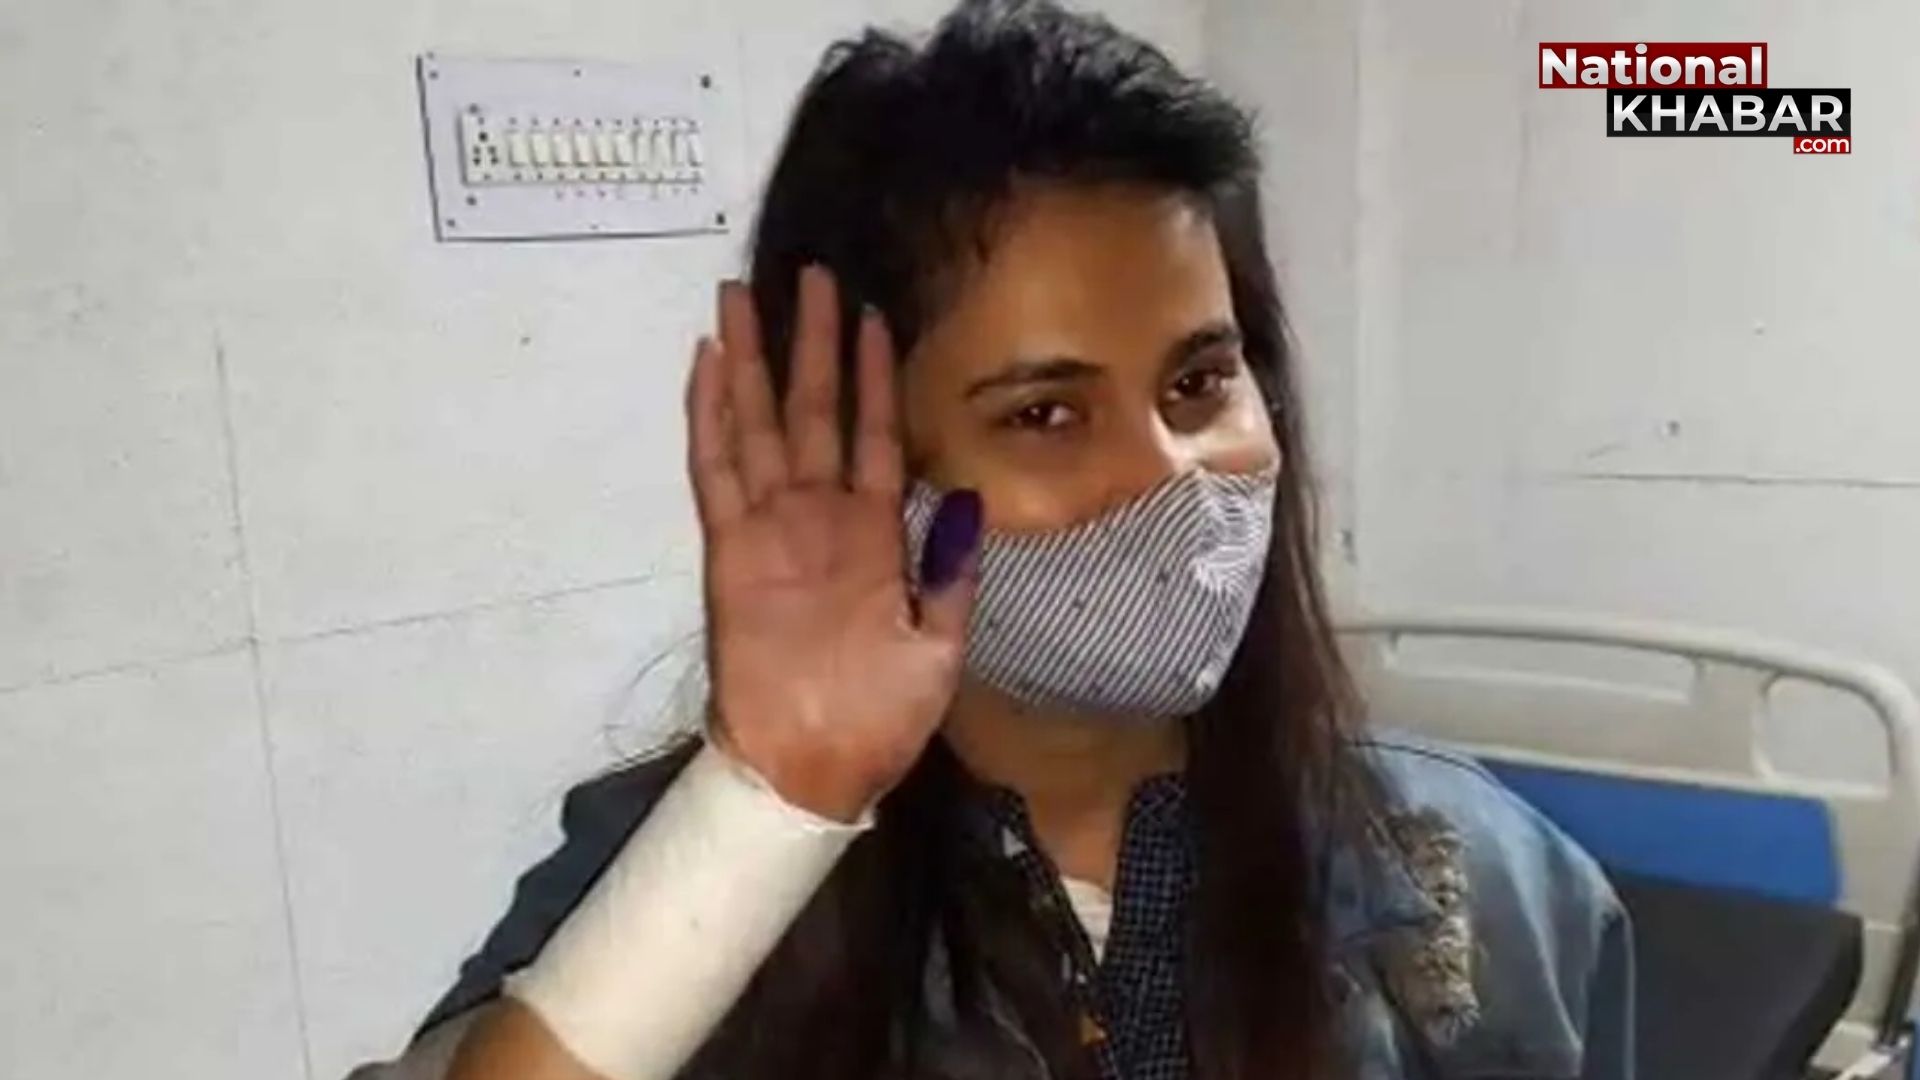 बीजेपी सांसद कौशल किशोर की बहू अंकिता ने काटी हाथ की नस, वीडियो जारी कर आयुष पर लगाए गंभीर आरोप